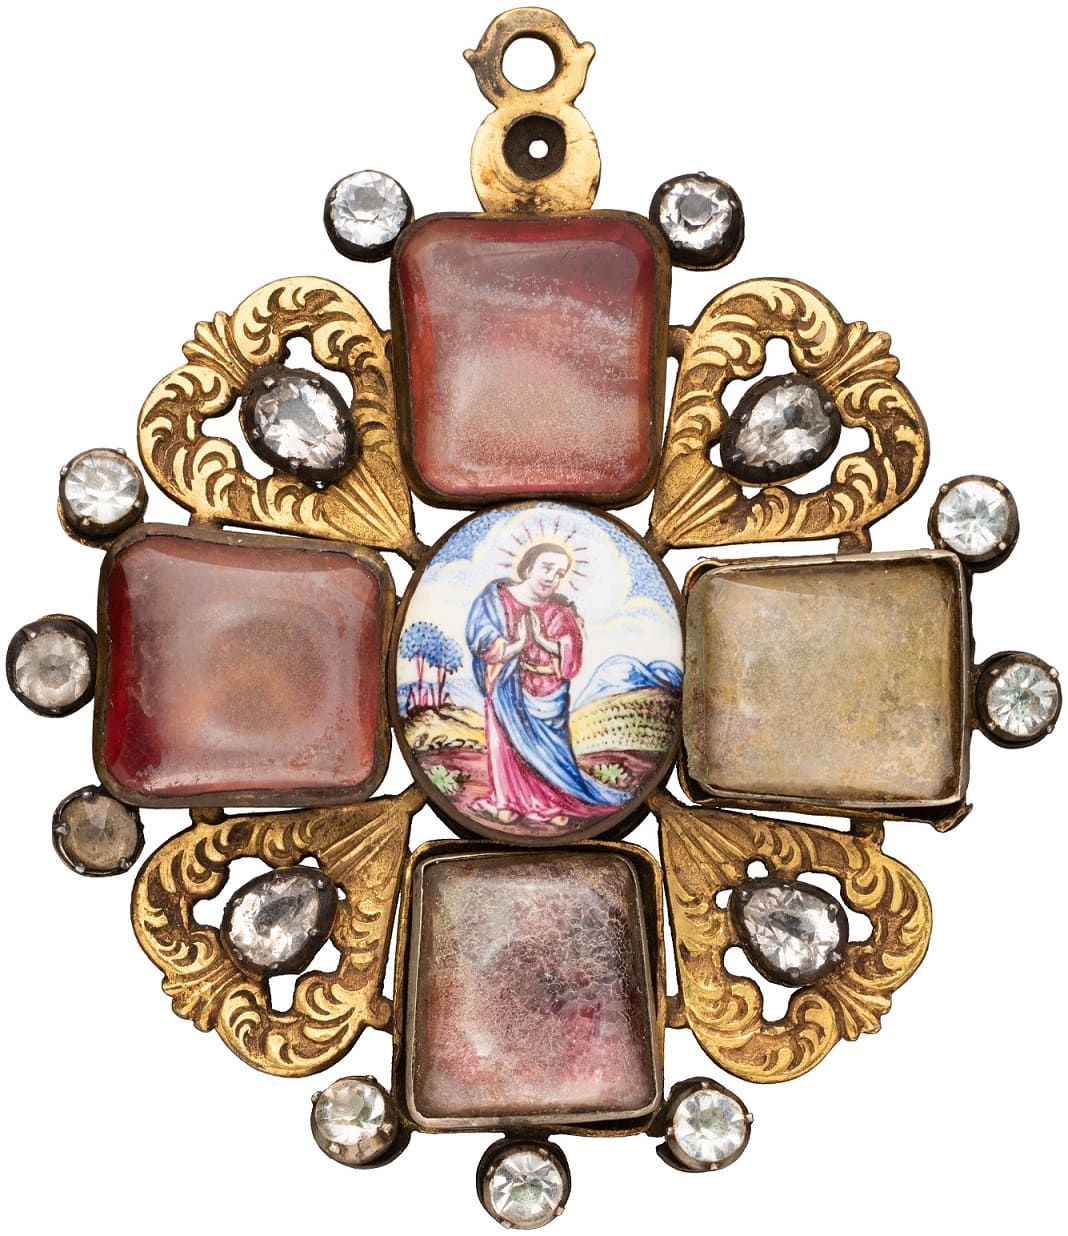 Знак ордена Святой Анны 1-й степени голштинский тип.jpg